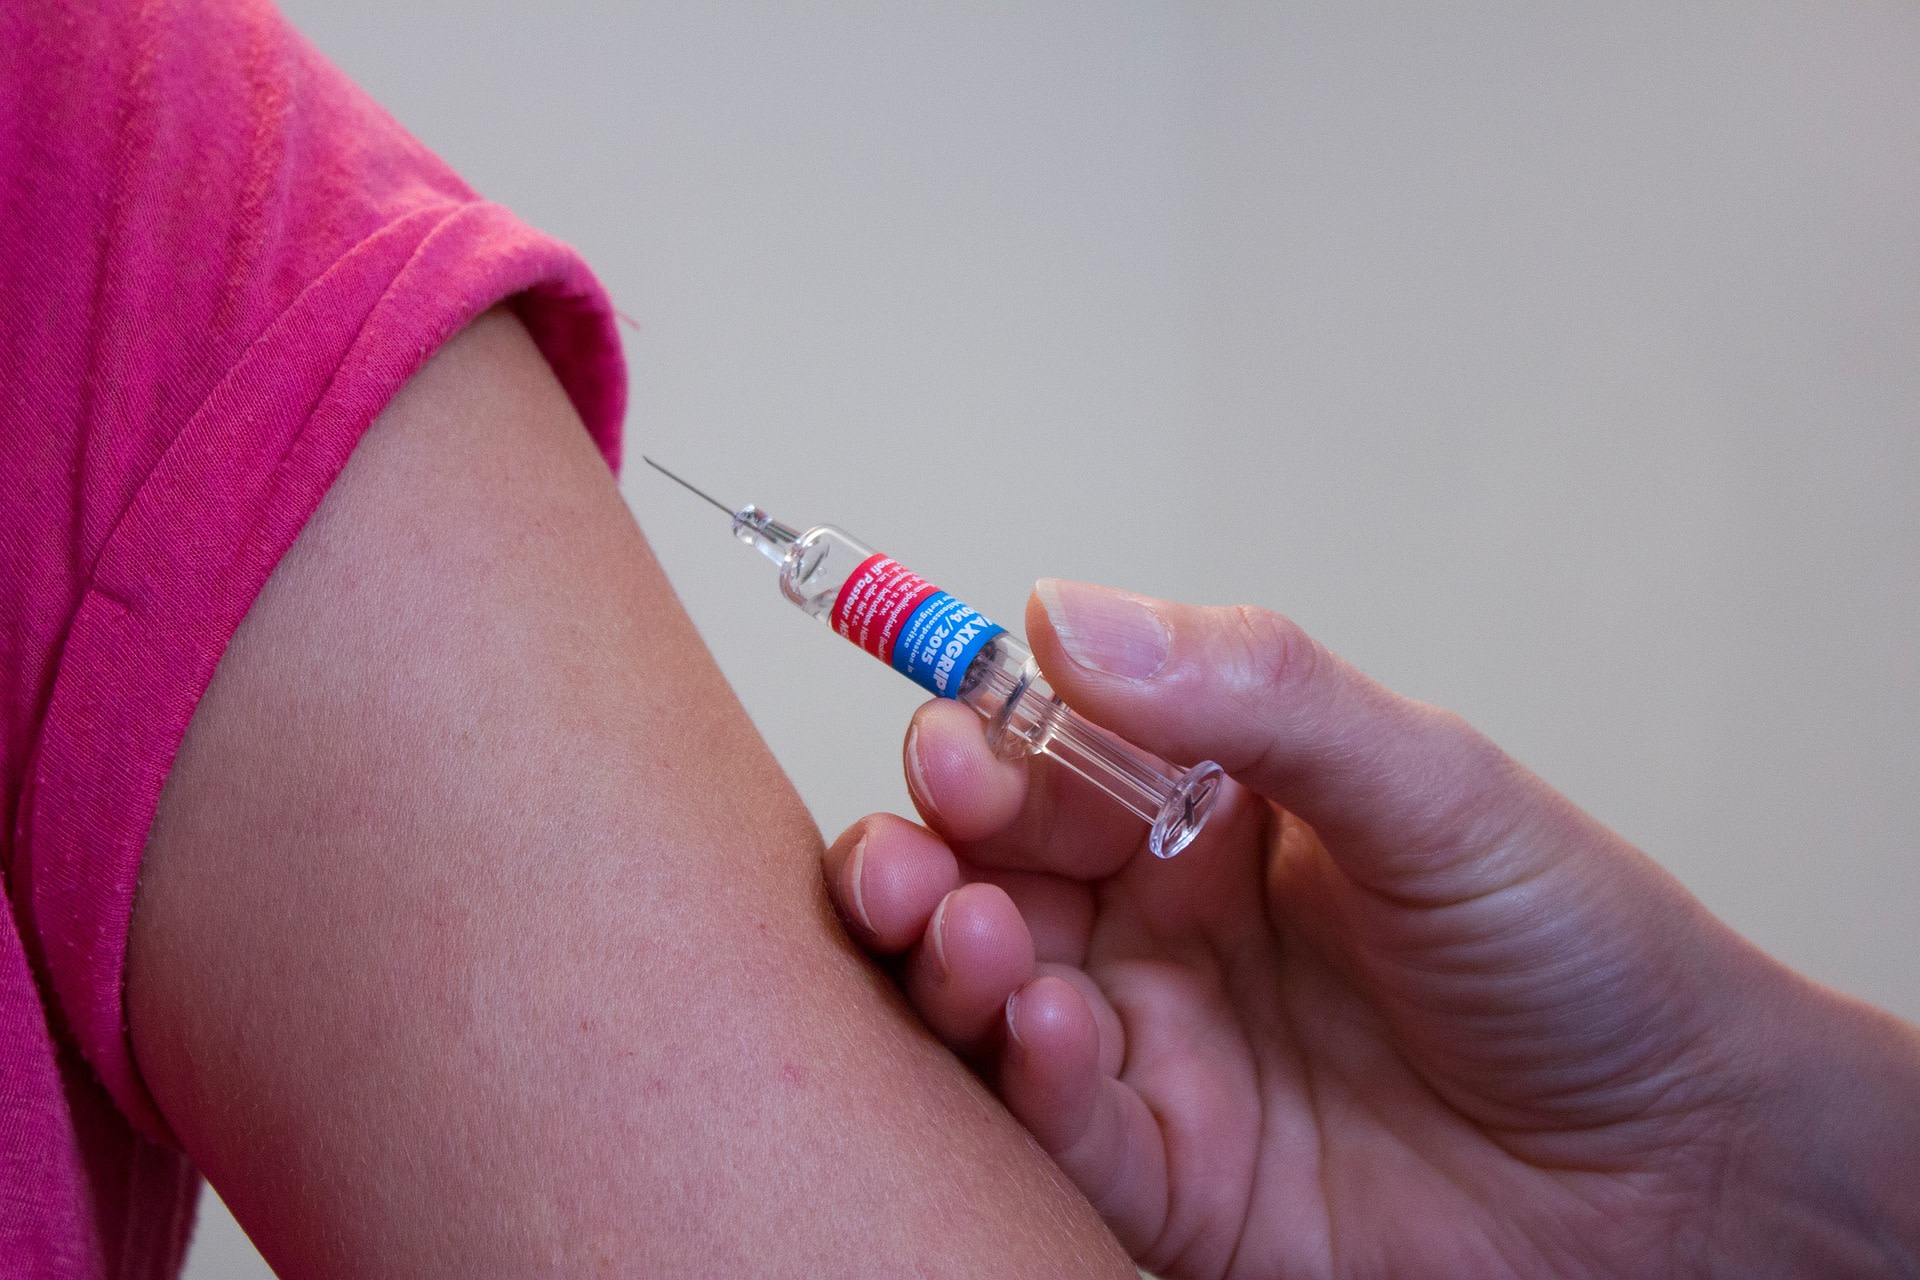 szczepionka-przeciw-polio-kiedy-nalezy-nia-szczepic